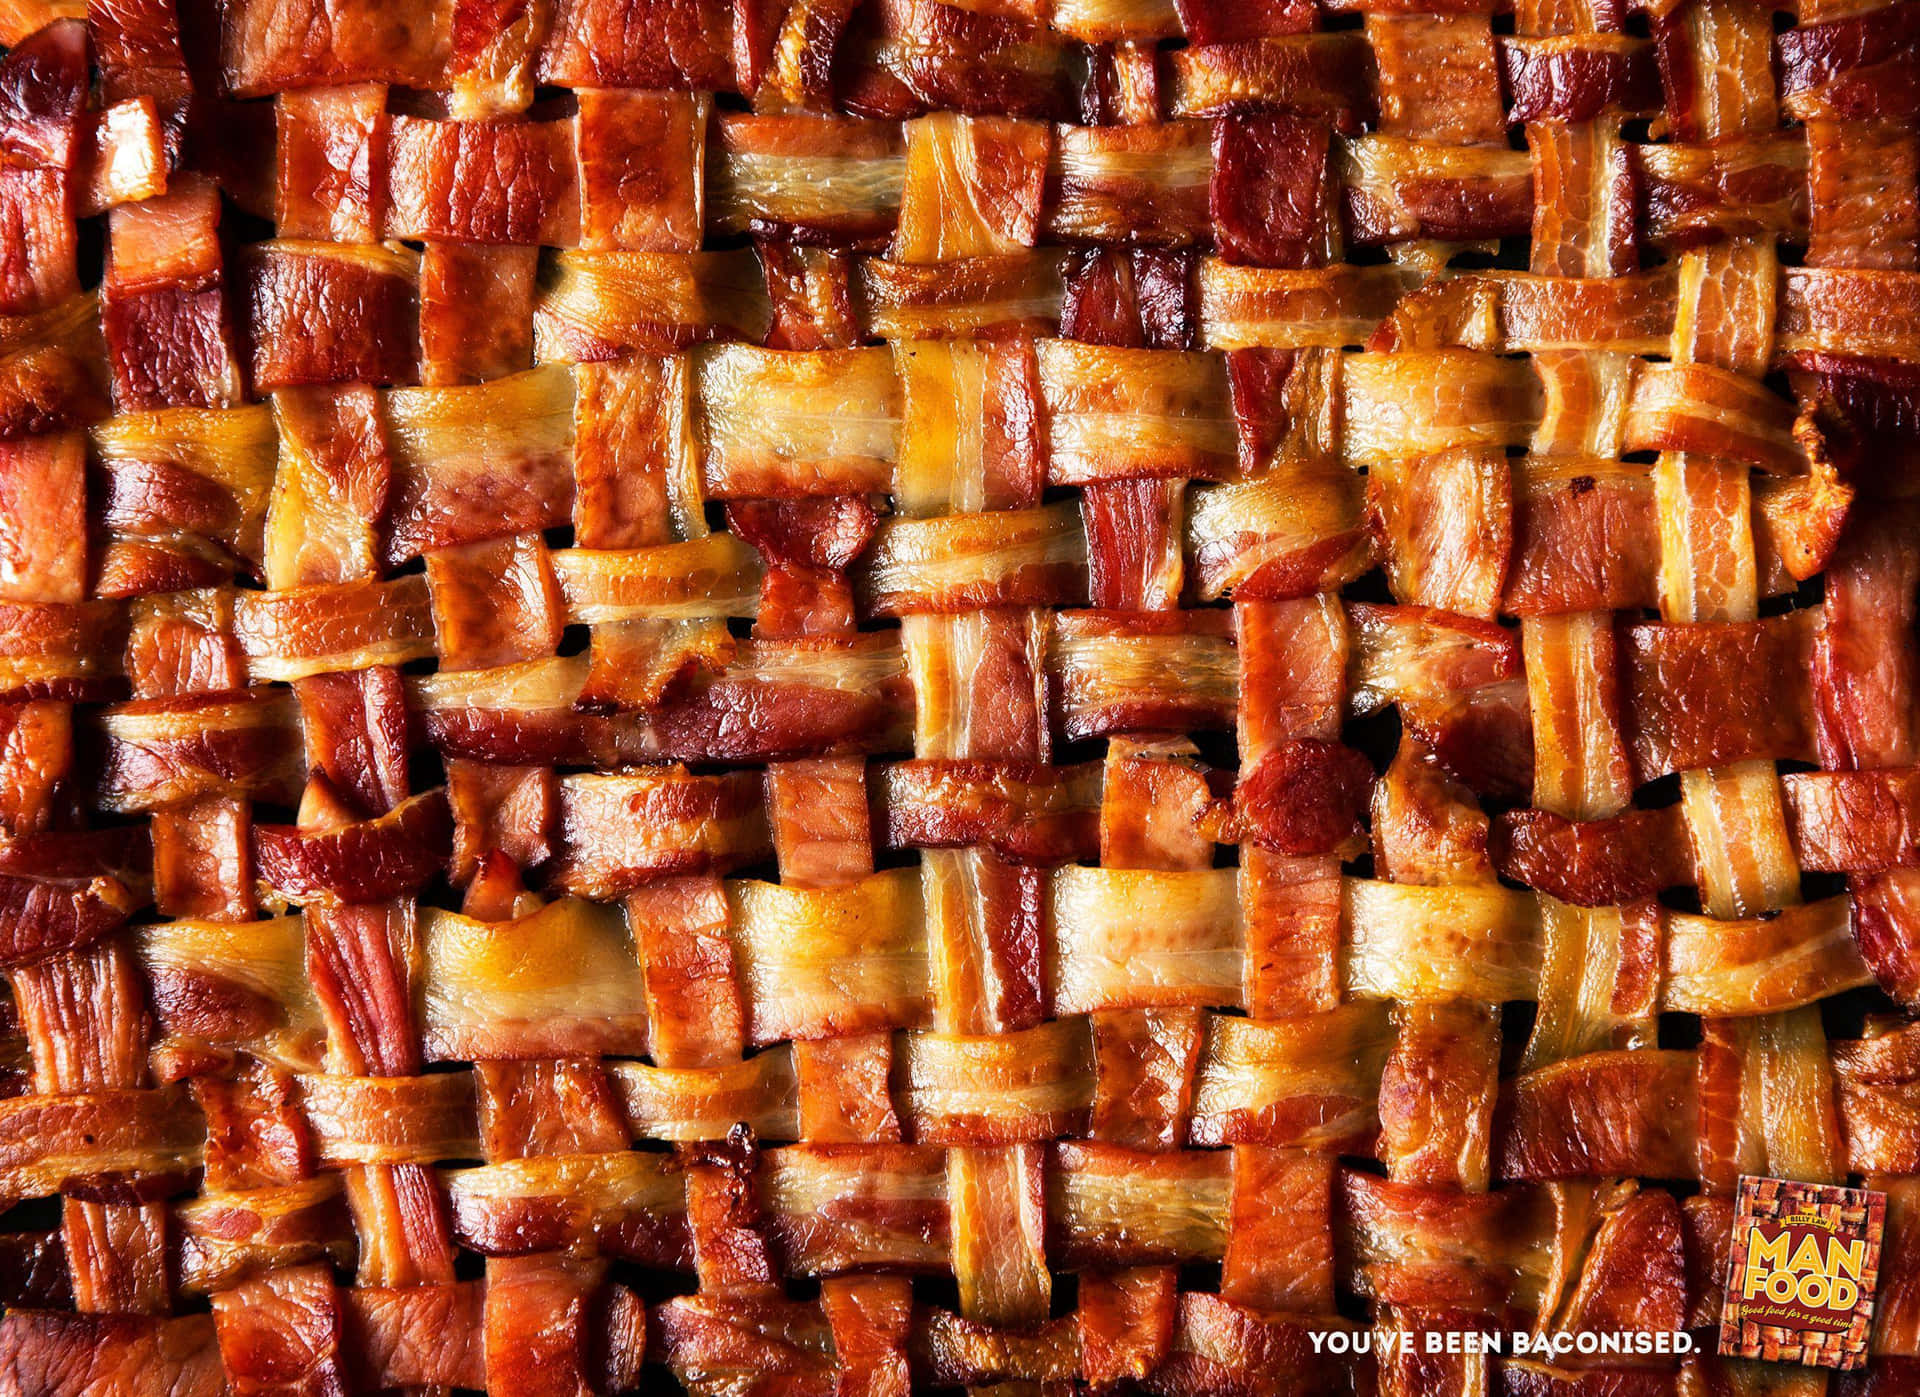 Dethär Baconet Är Tillagat Till Perfektion! #bacon #frukost